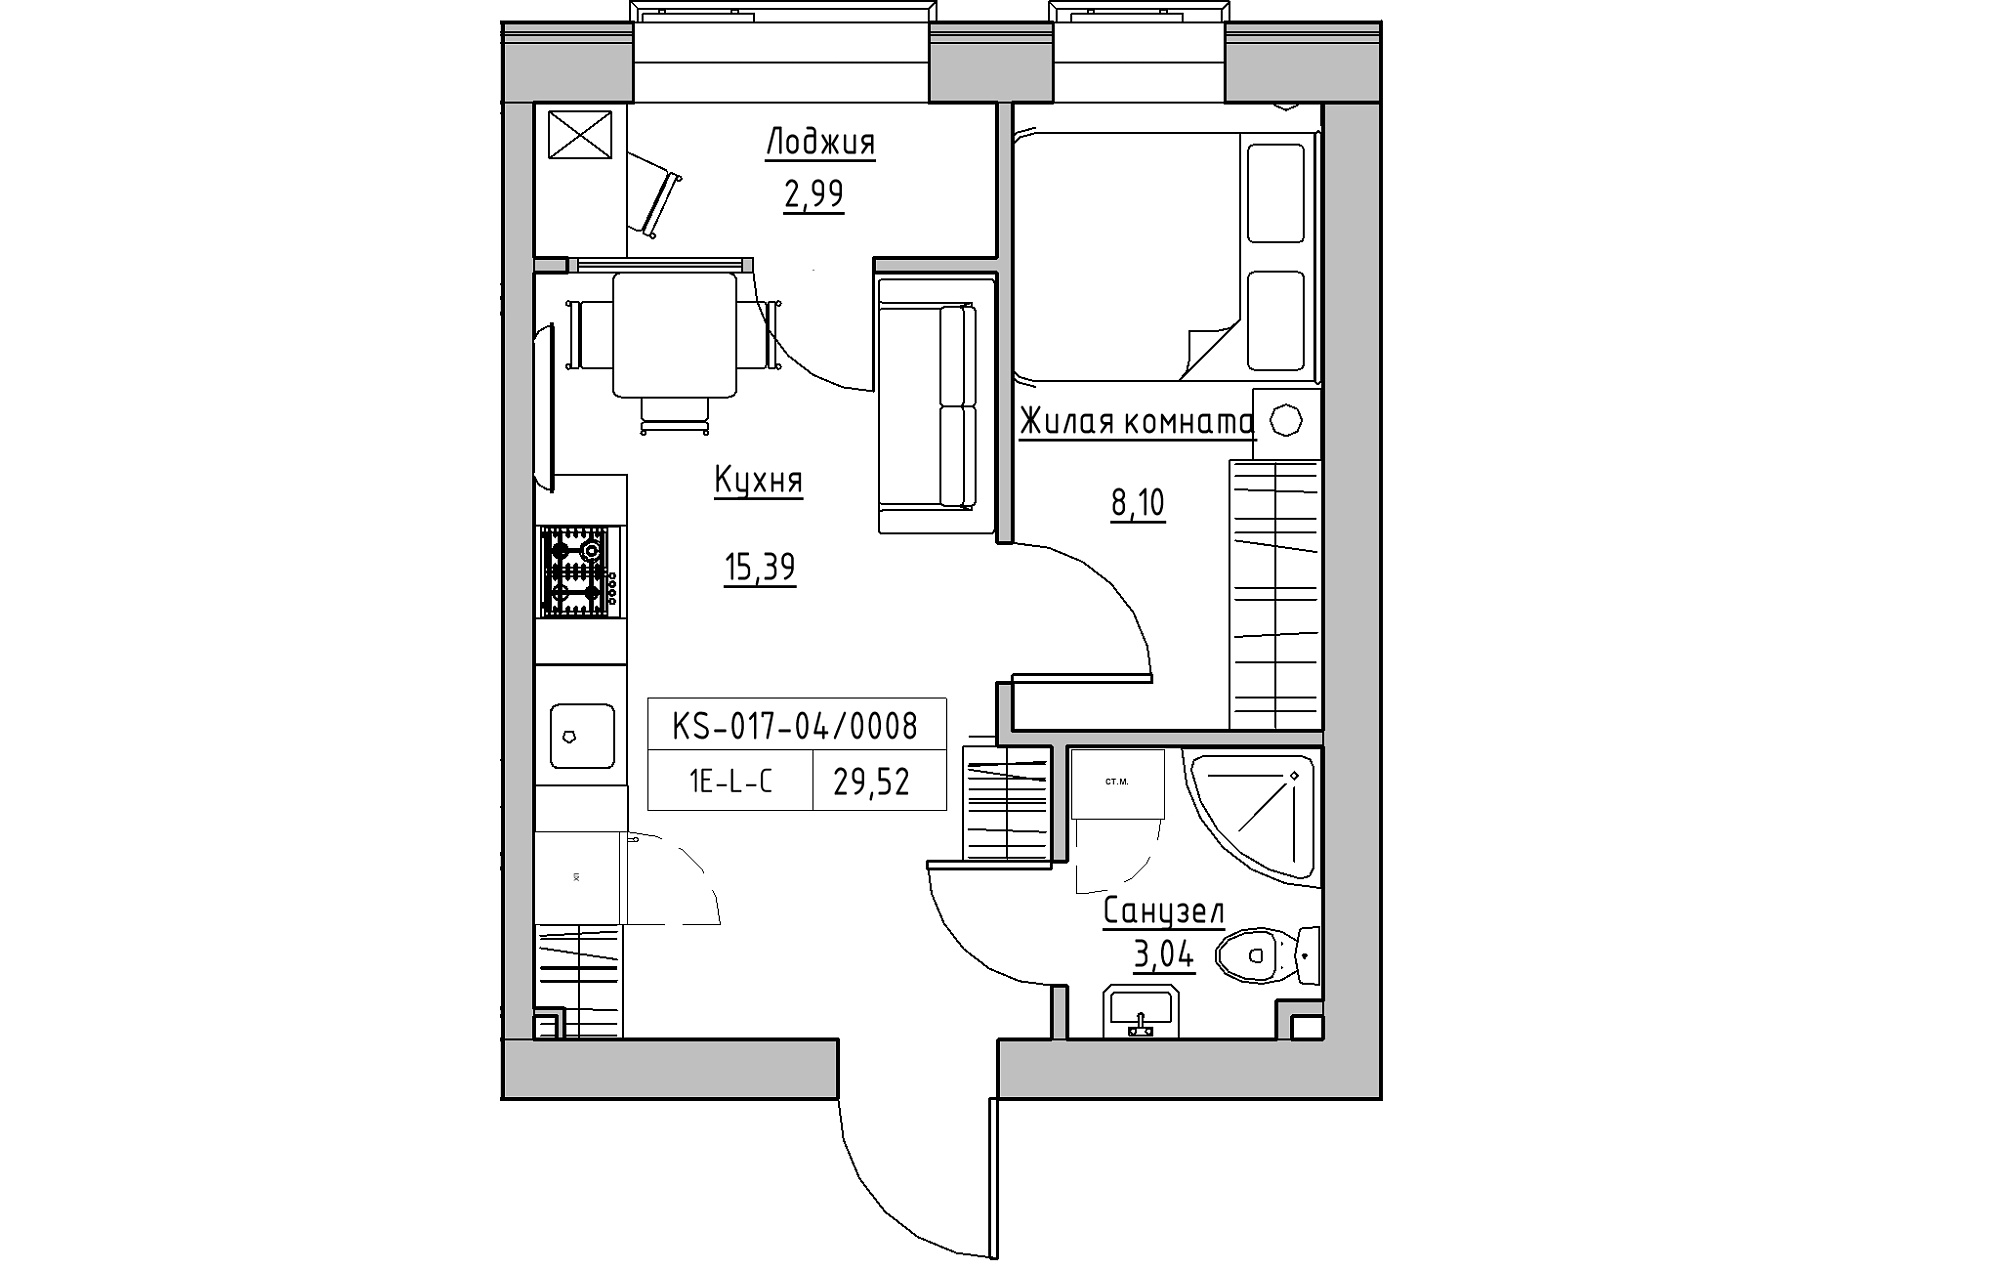 Планування 1-к квартира площею 29.52м2, KS-017-04/0008.